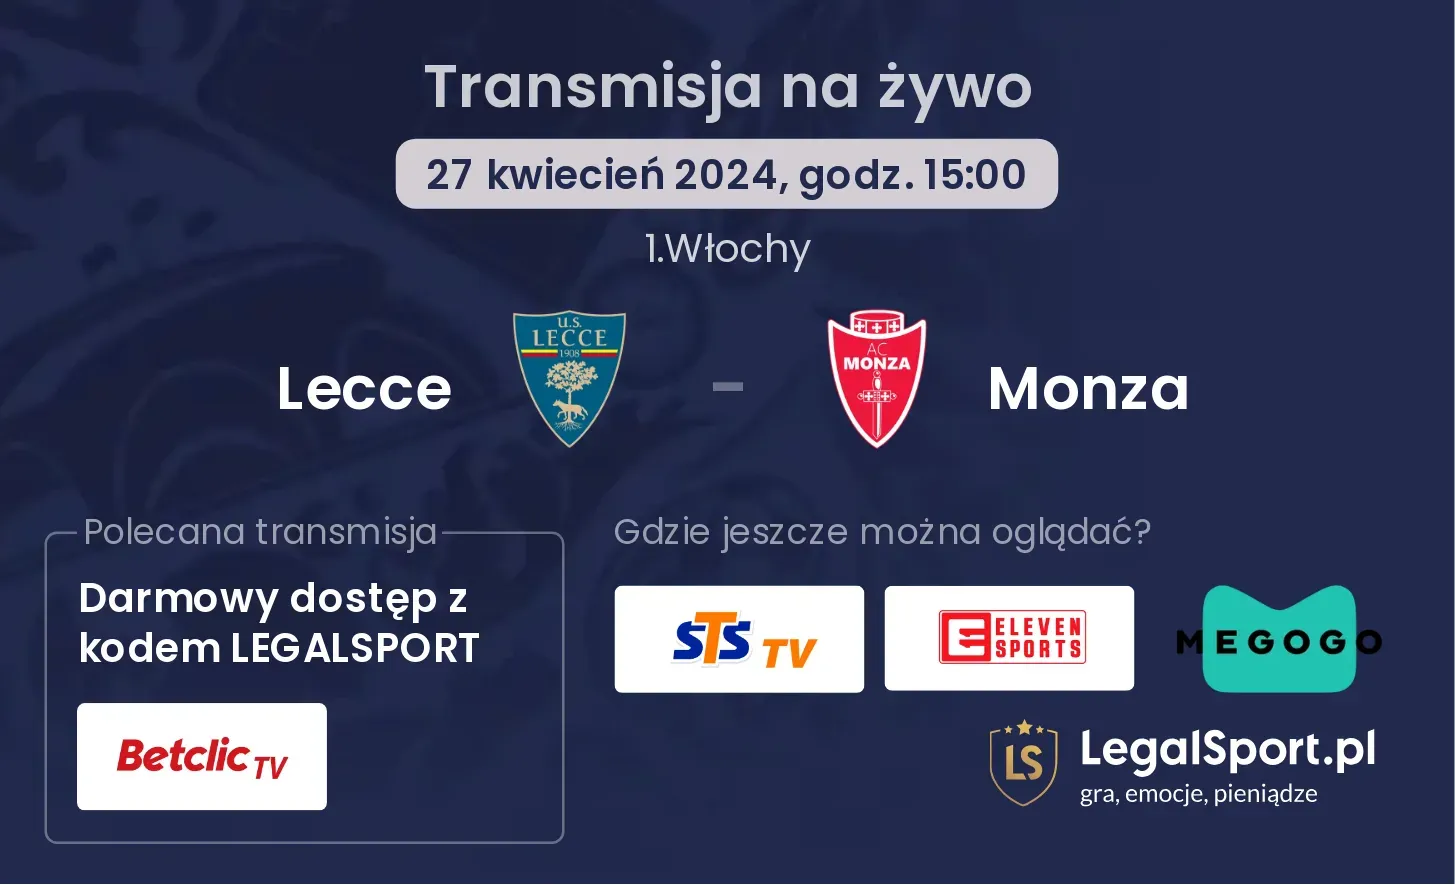 Lecce - Monza transmisja na żywo